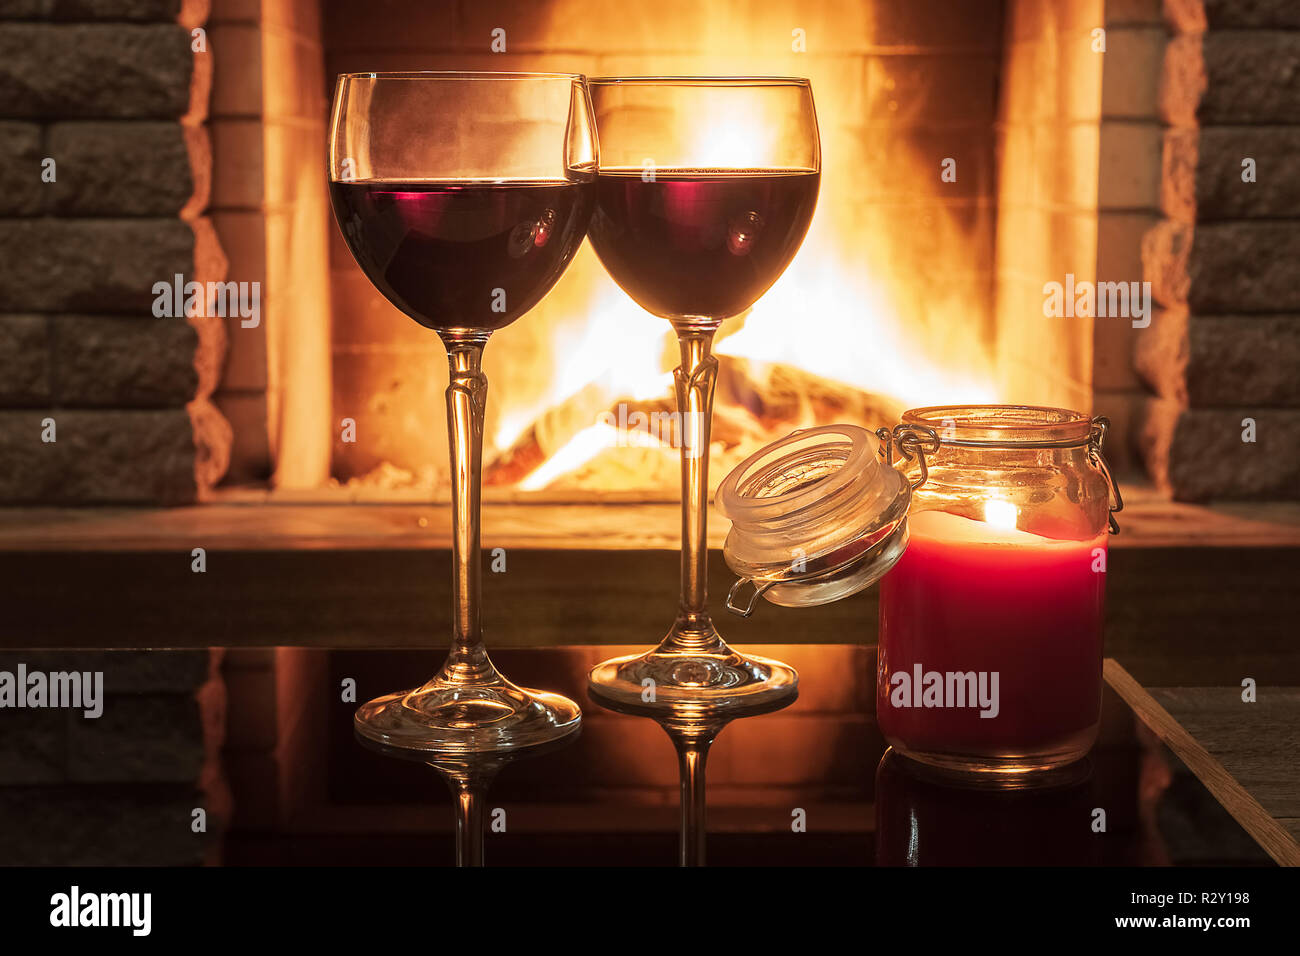 Ruhige Szene vor dem gemütlichen Kamin, mit zwei Gläsern Rotwein und Kerzenlicht, in Country House, im Winter Urlaub. Stockfoto